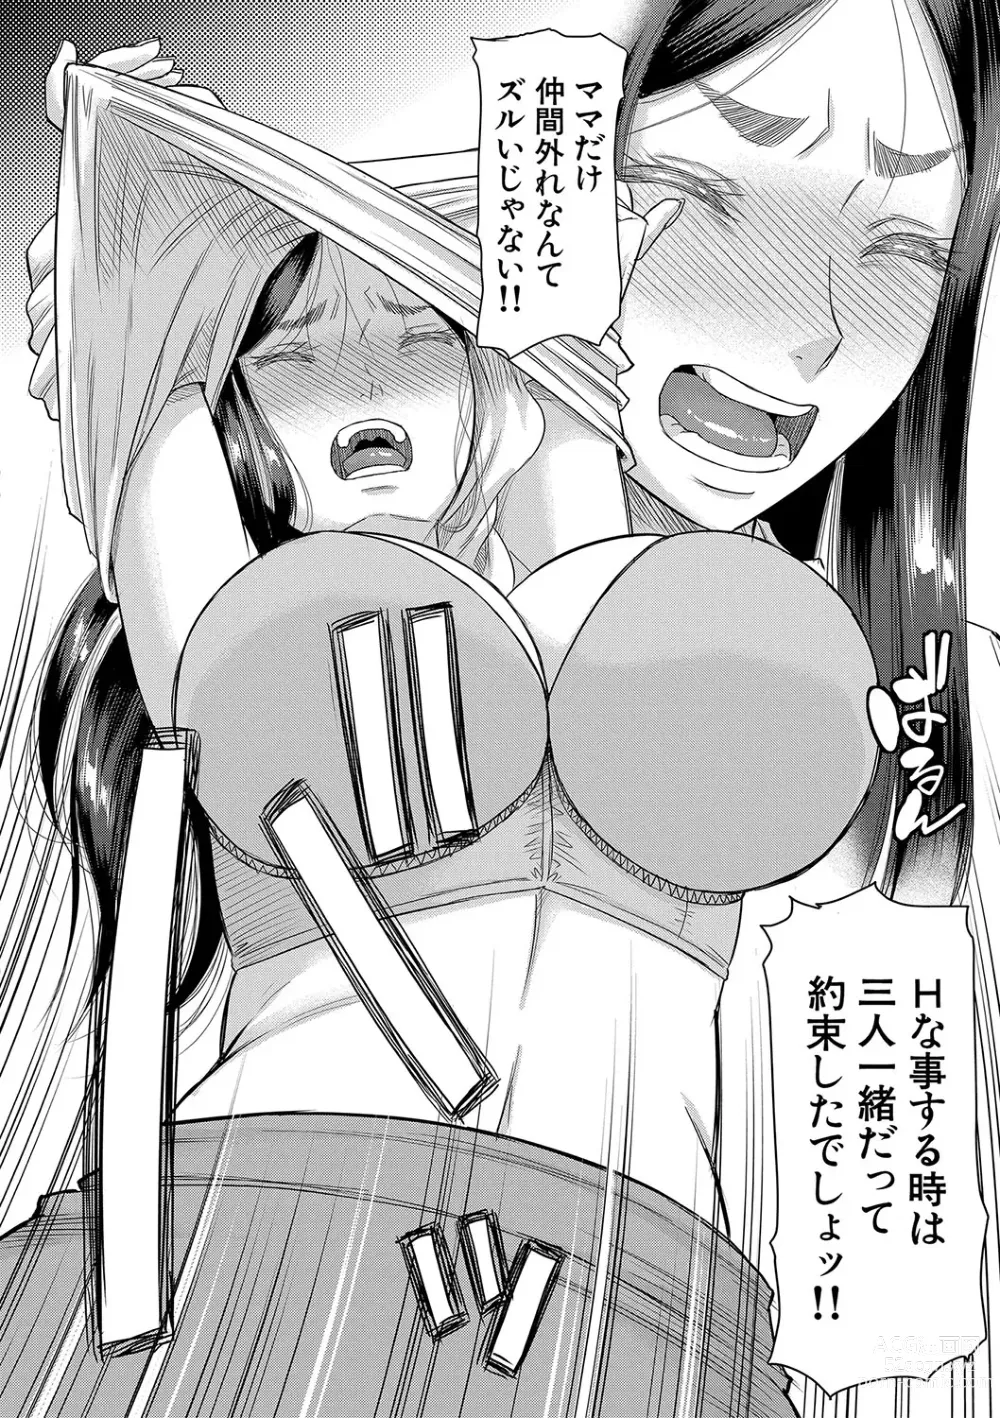 Page 13 of manga Boku no Kanojo ga...